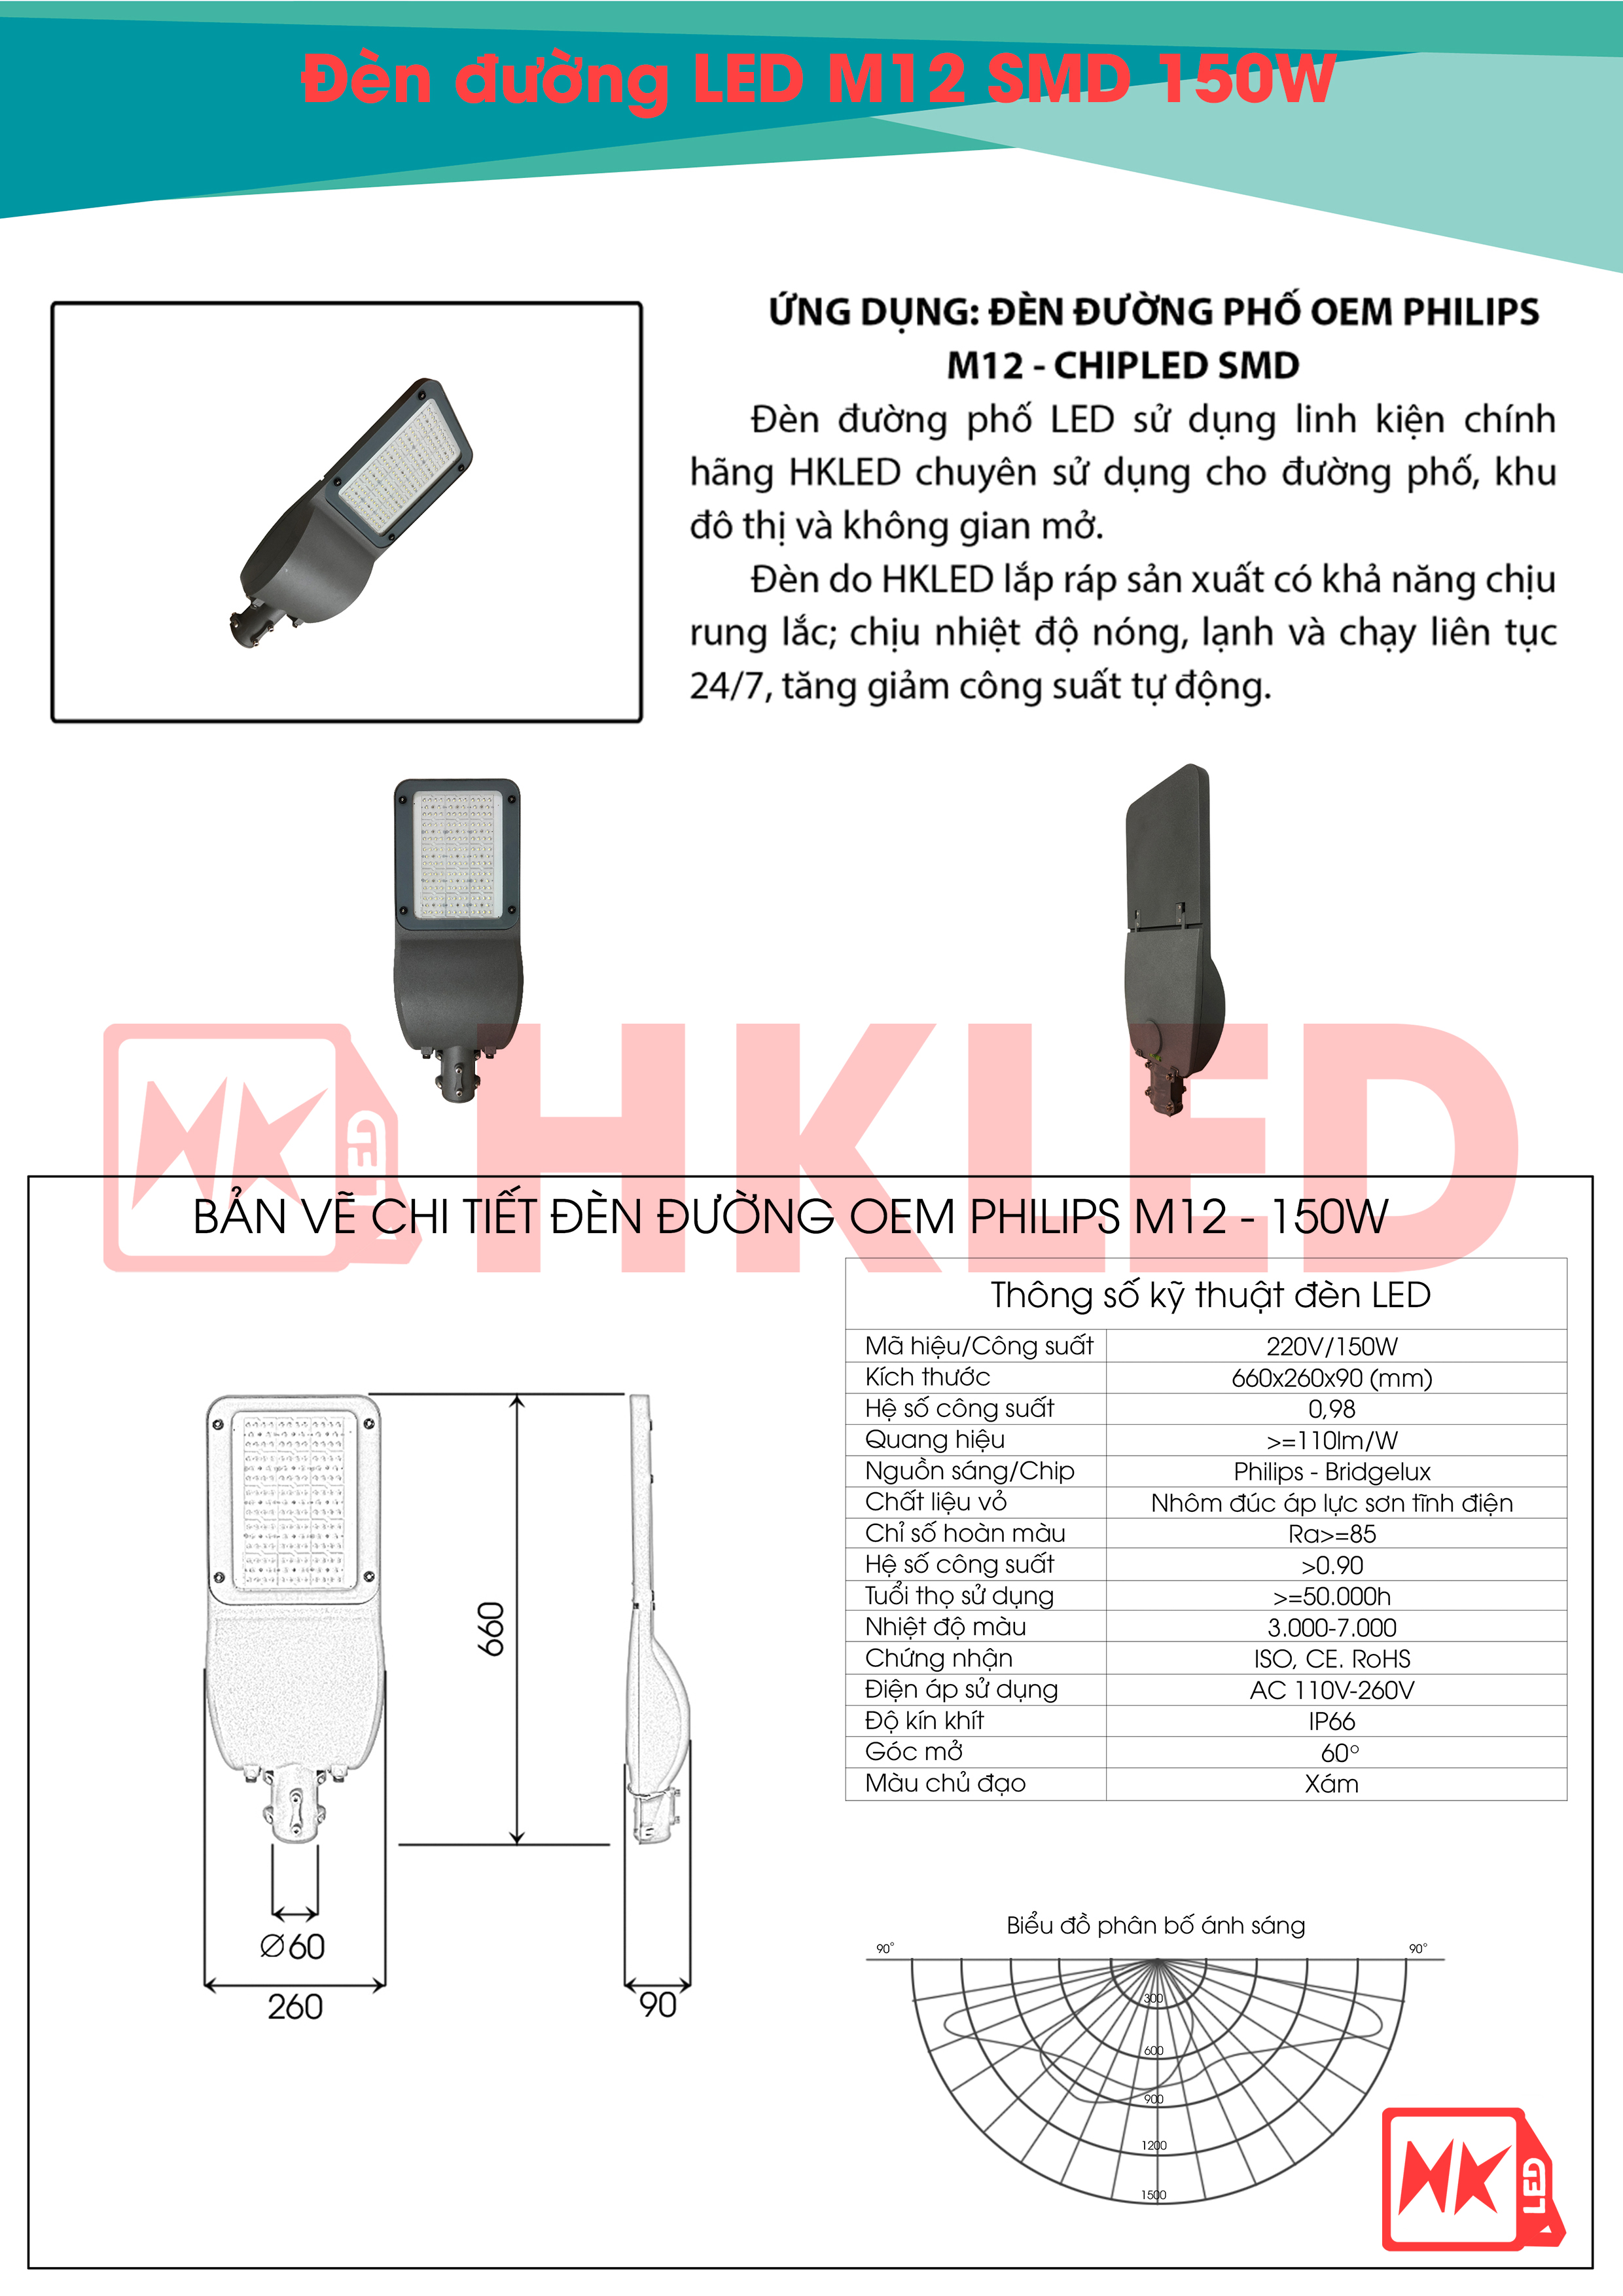 Ứng dụng, bản vẽ và thông số kỹ thuật đèn đường LED OEM Philips M12 150W